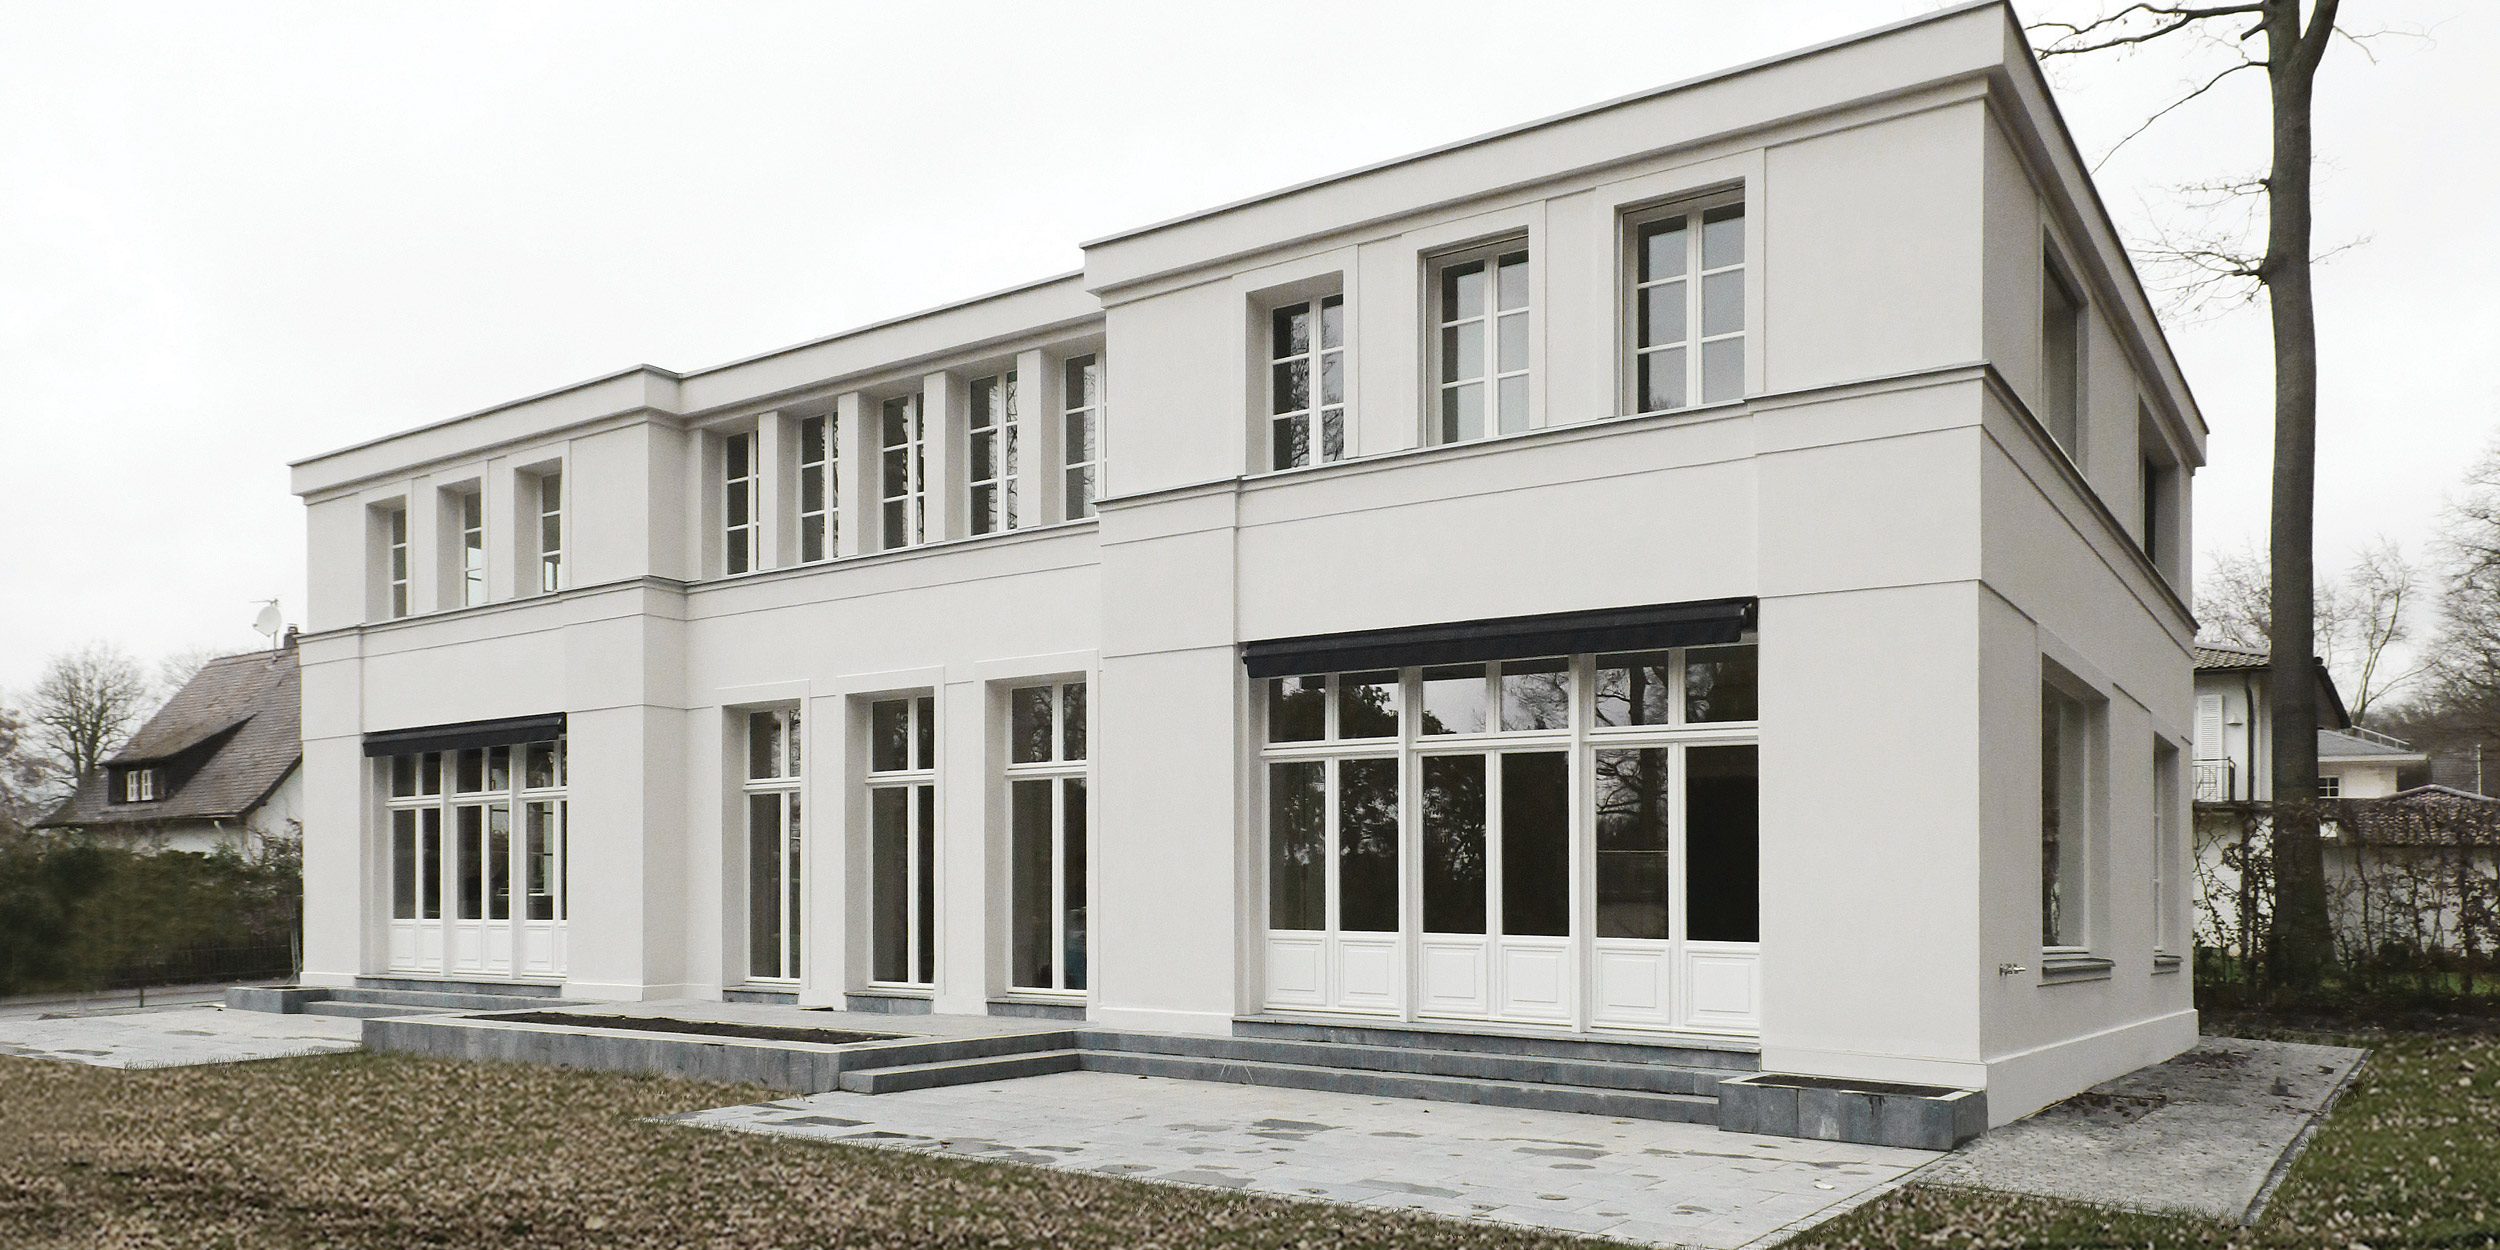 Filigrane Gesimsbänder akzentuieren die Fassade des Neubau in allen Geschossen.